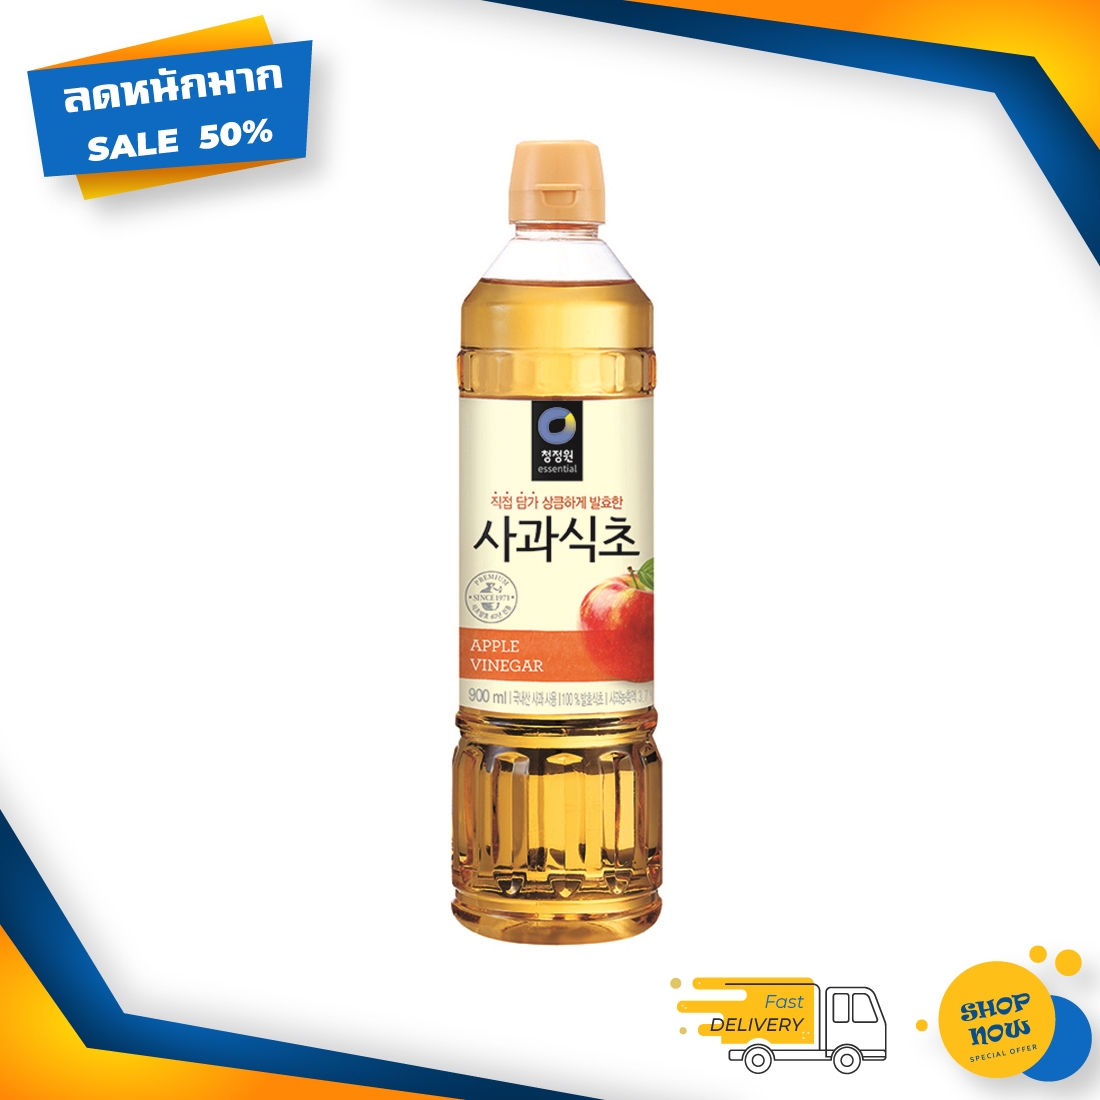 [ ส่งเร็ว 24 ชม ] น้ำส้มสายชู แอปเปิลไซเดอร์ ชองจองวอน น้ำส้มสายชูหมักจากแอปเปิ้ล 900 ml x 1 ขวด น้ำส้มสายชูapple cider น้ำส้มสายชูหมั น้ำส้มสายชูแอป น้ำส้มสายชู acv แอปเปิ้ล แอบเปิ้ลไซเดอร น้ําส้มสายชู น้ําส้มสายชูหมัก แอปเปิ้ลไซเดอร์